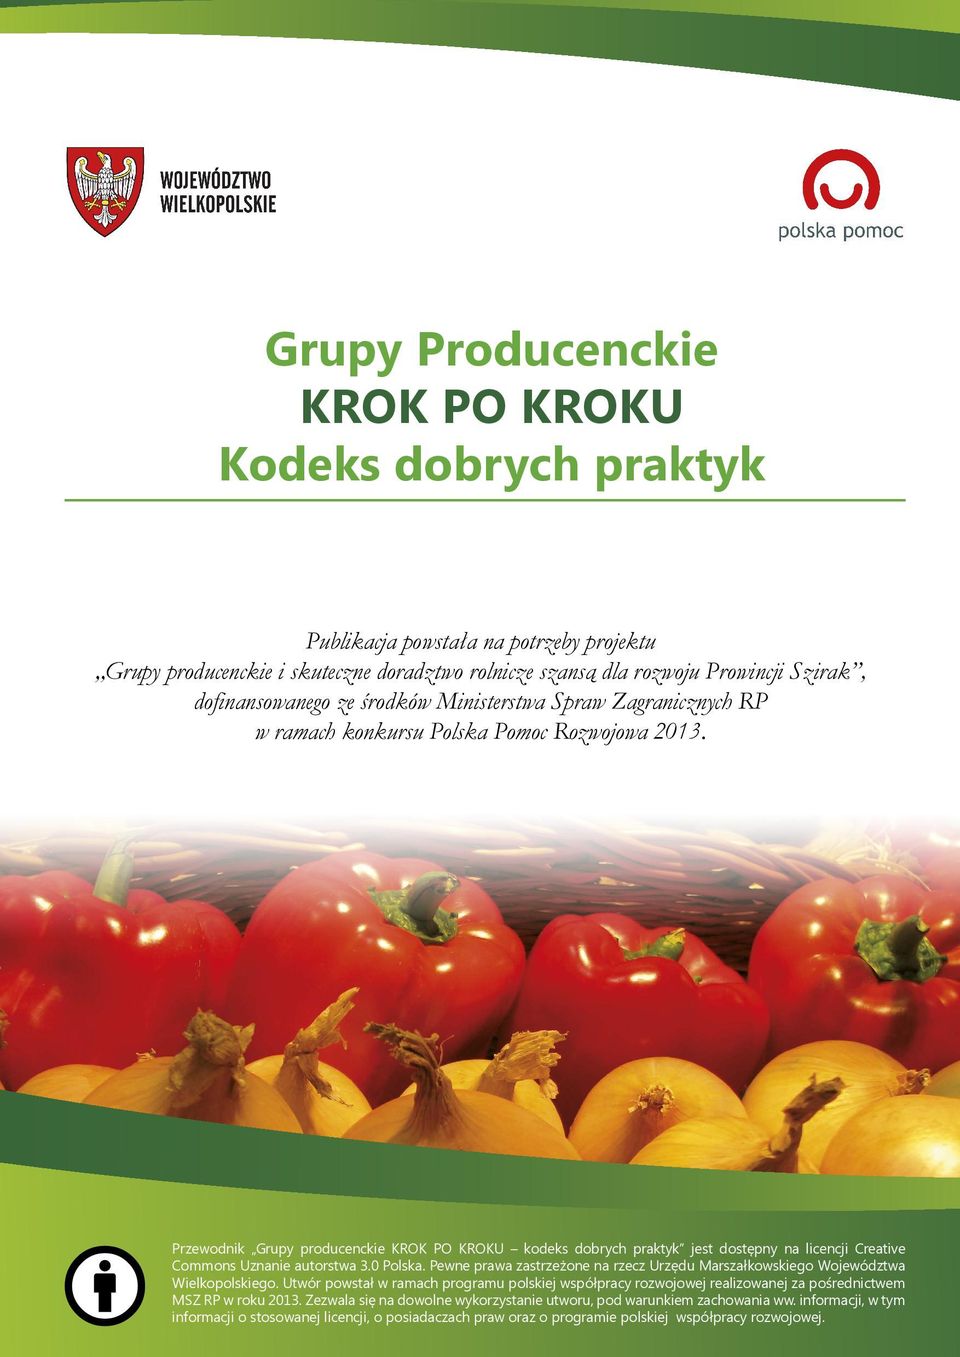 Przewodnik Grupy producenckie KROK PO KROKU kodeks dobrych praktyk jest dostępny na licencji Creative Commons Uznanie autorstwa 3.0 Polska.